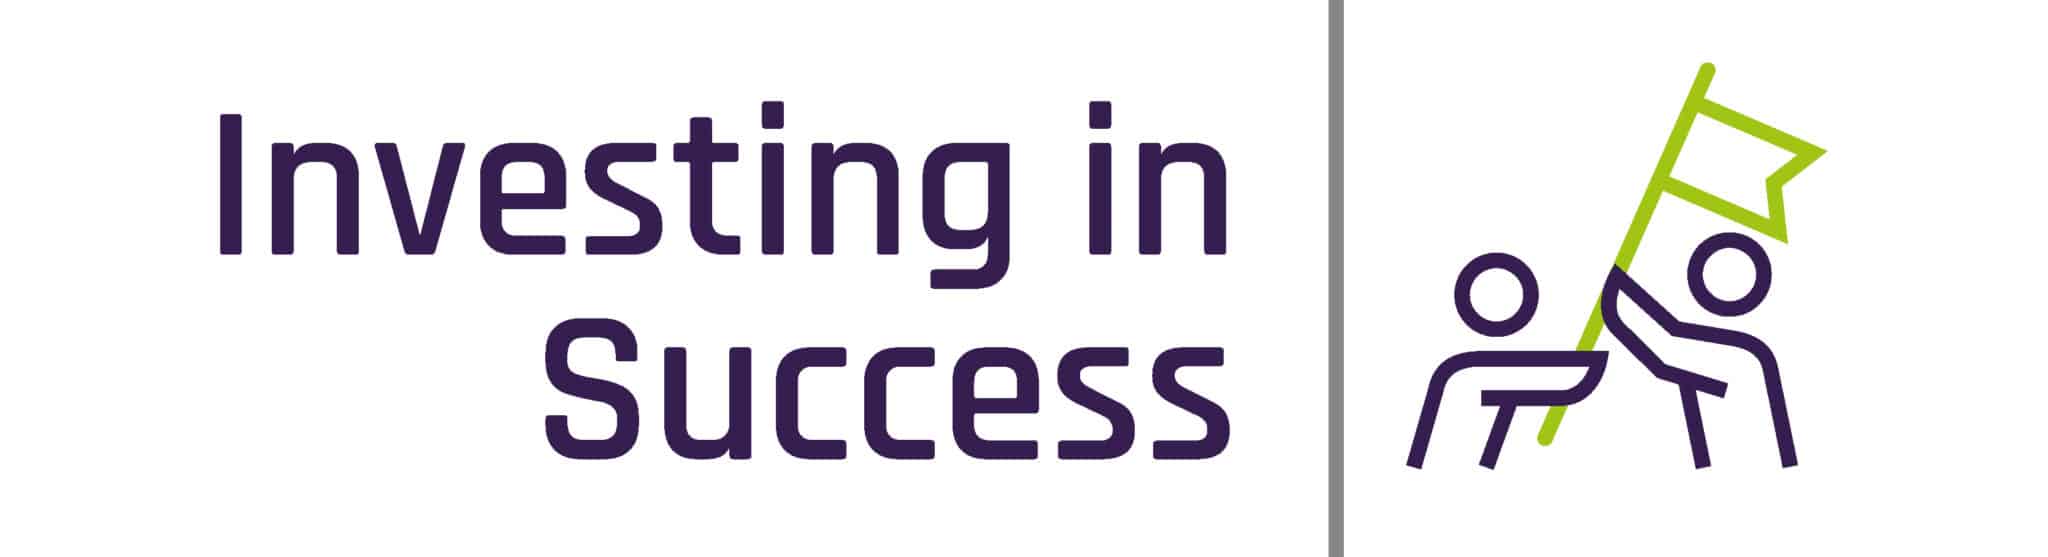 investing in success logo